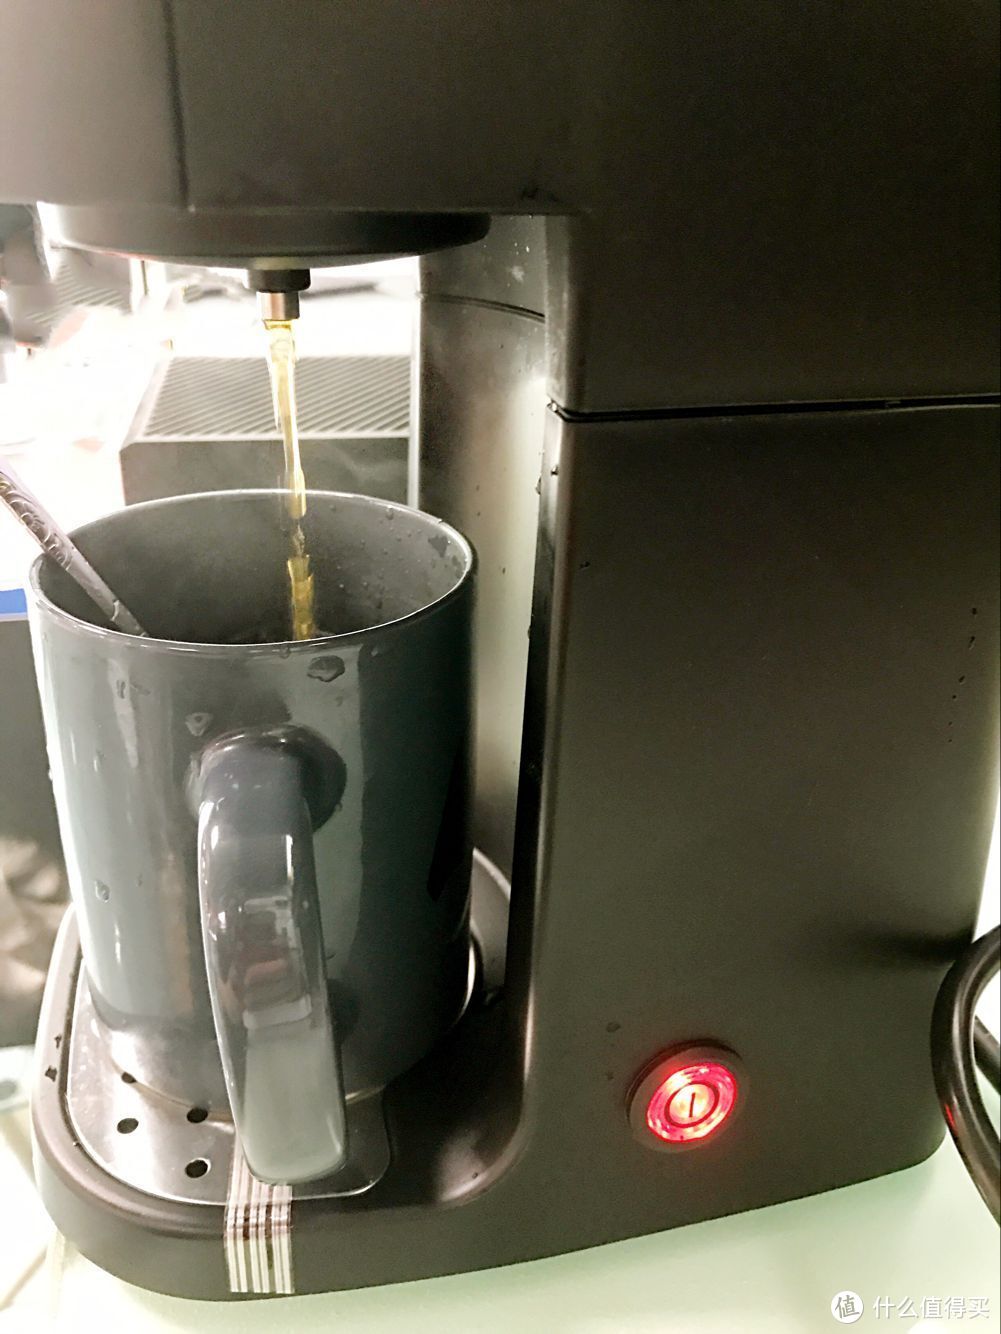 多功能懒人咖啡机  ONEIDA 奥奈达 N1